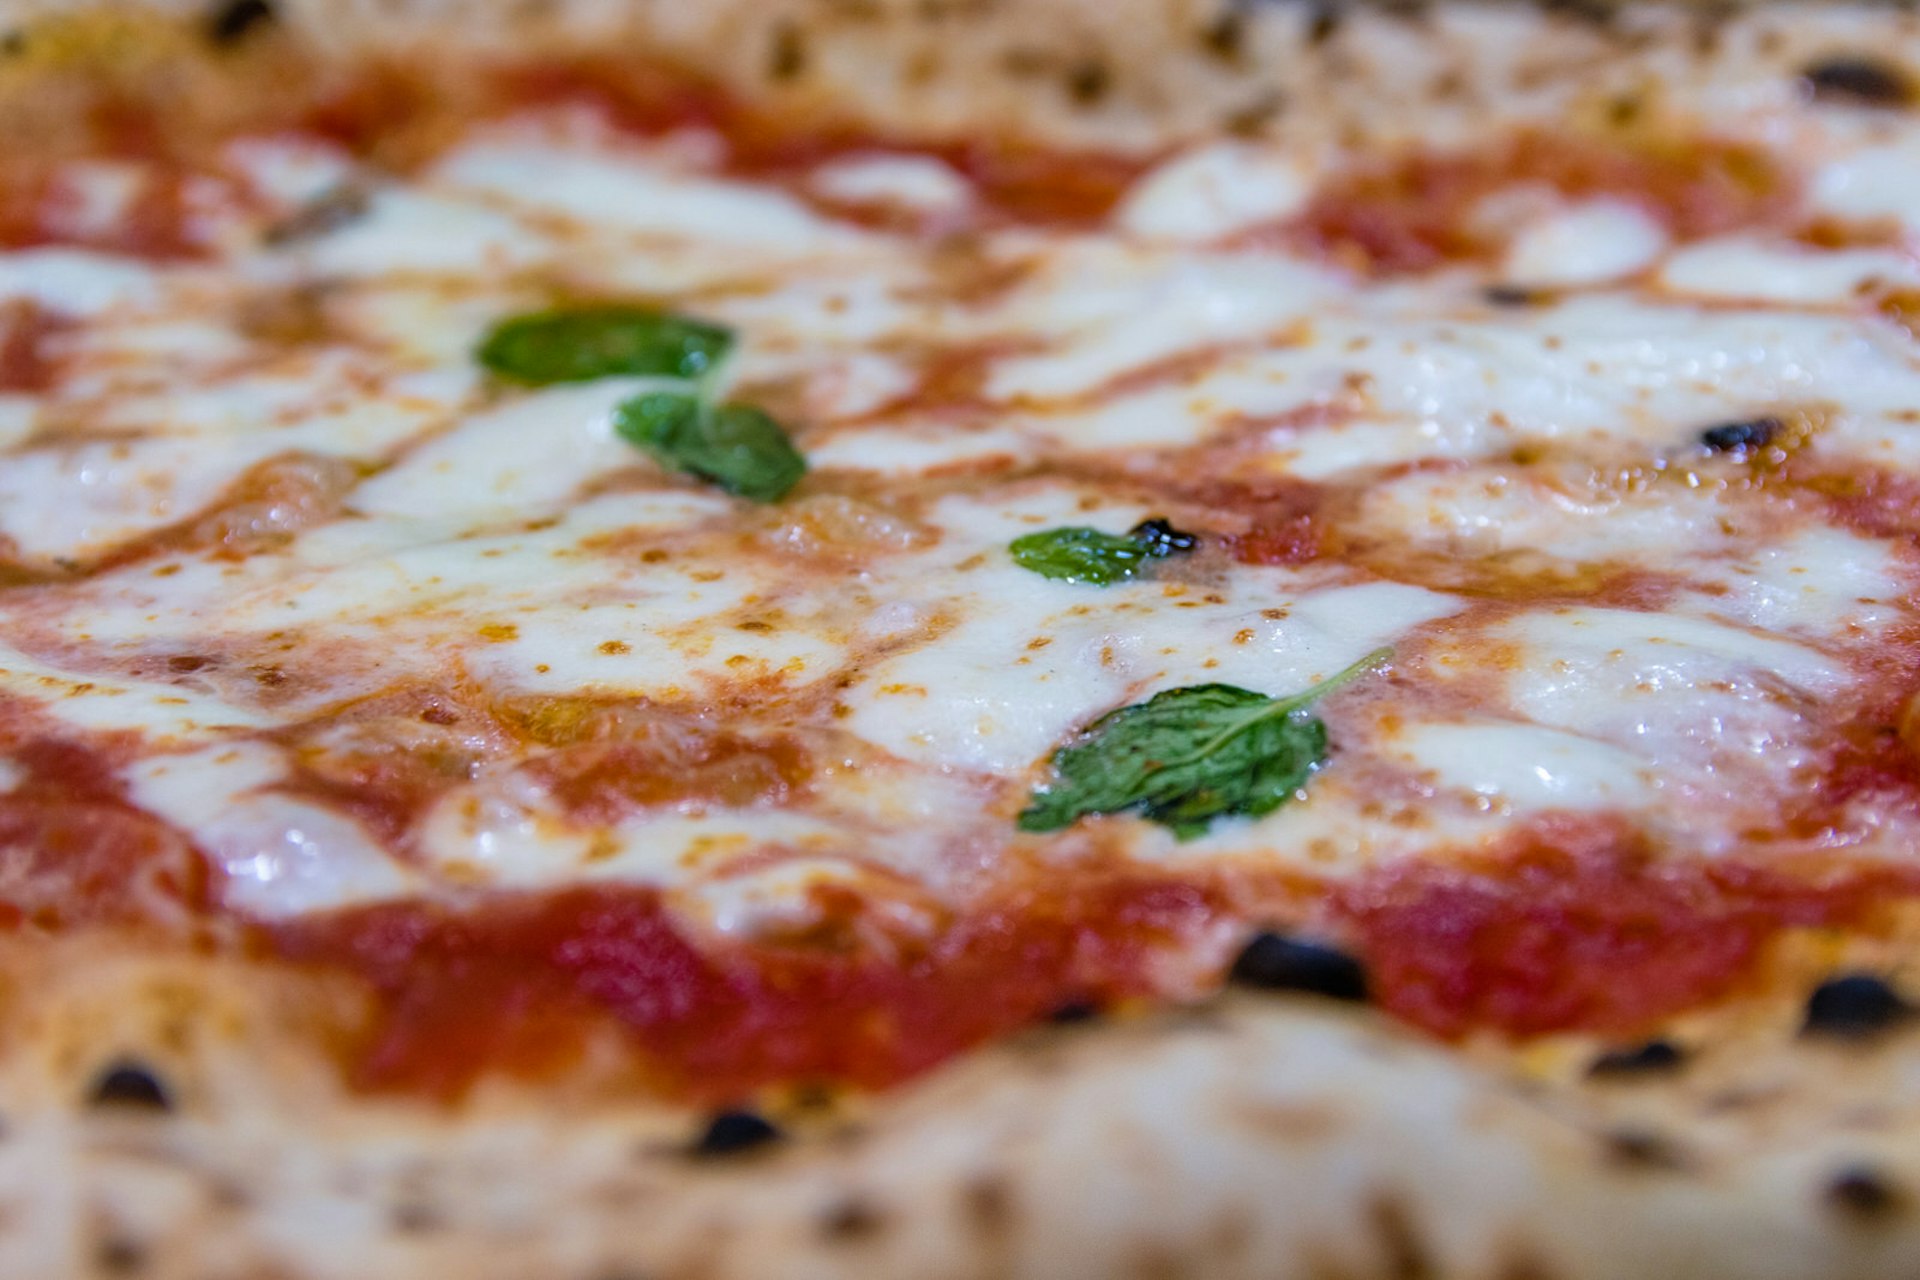 Classic Margherita pizza at Da Michele © Alvaro Faraco / Getty Images